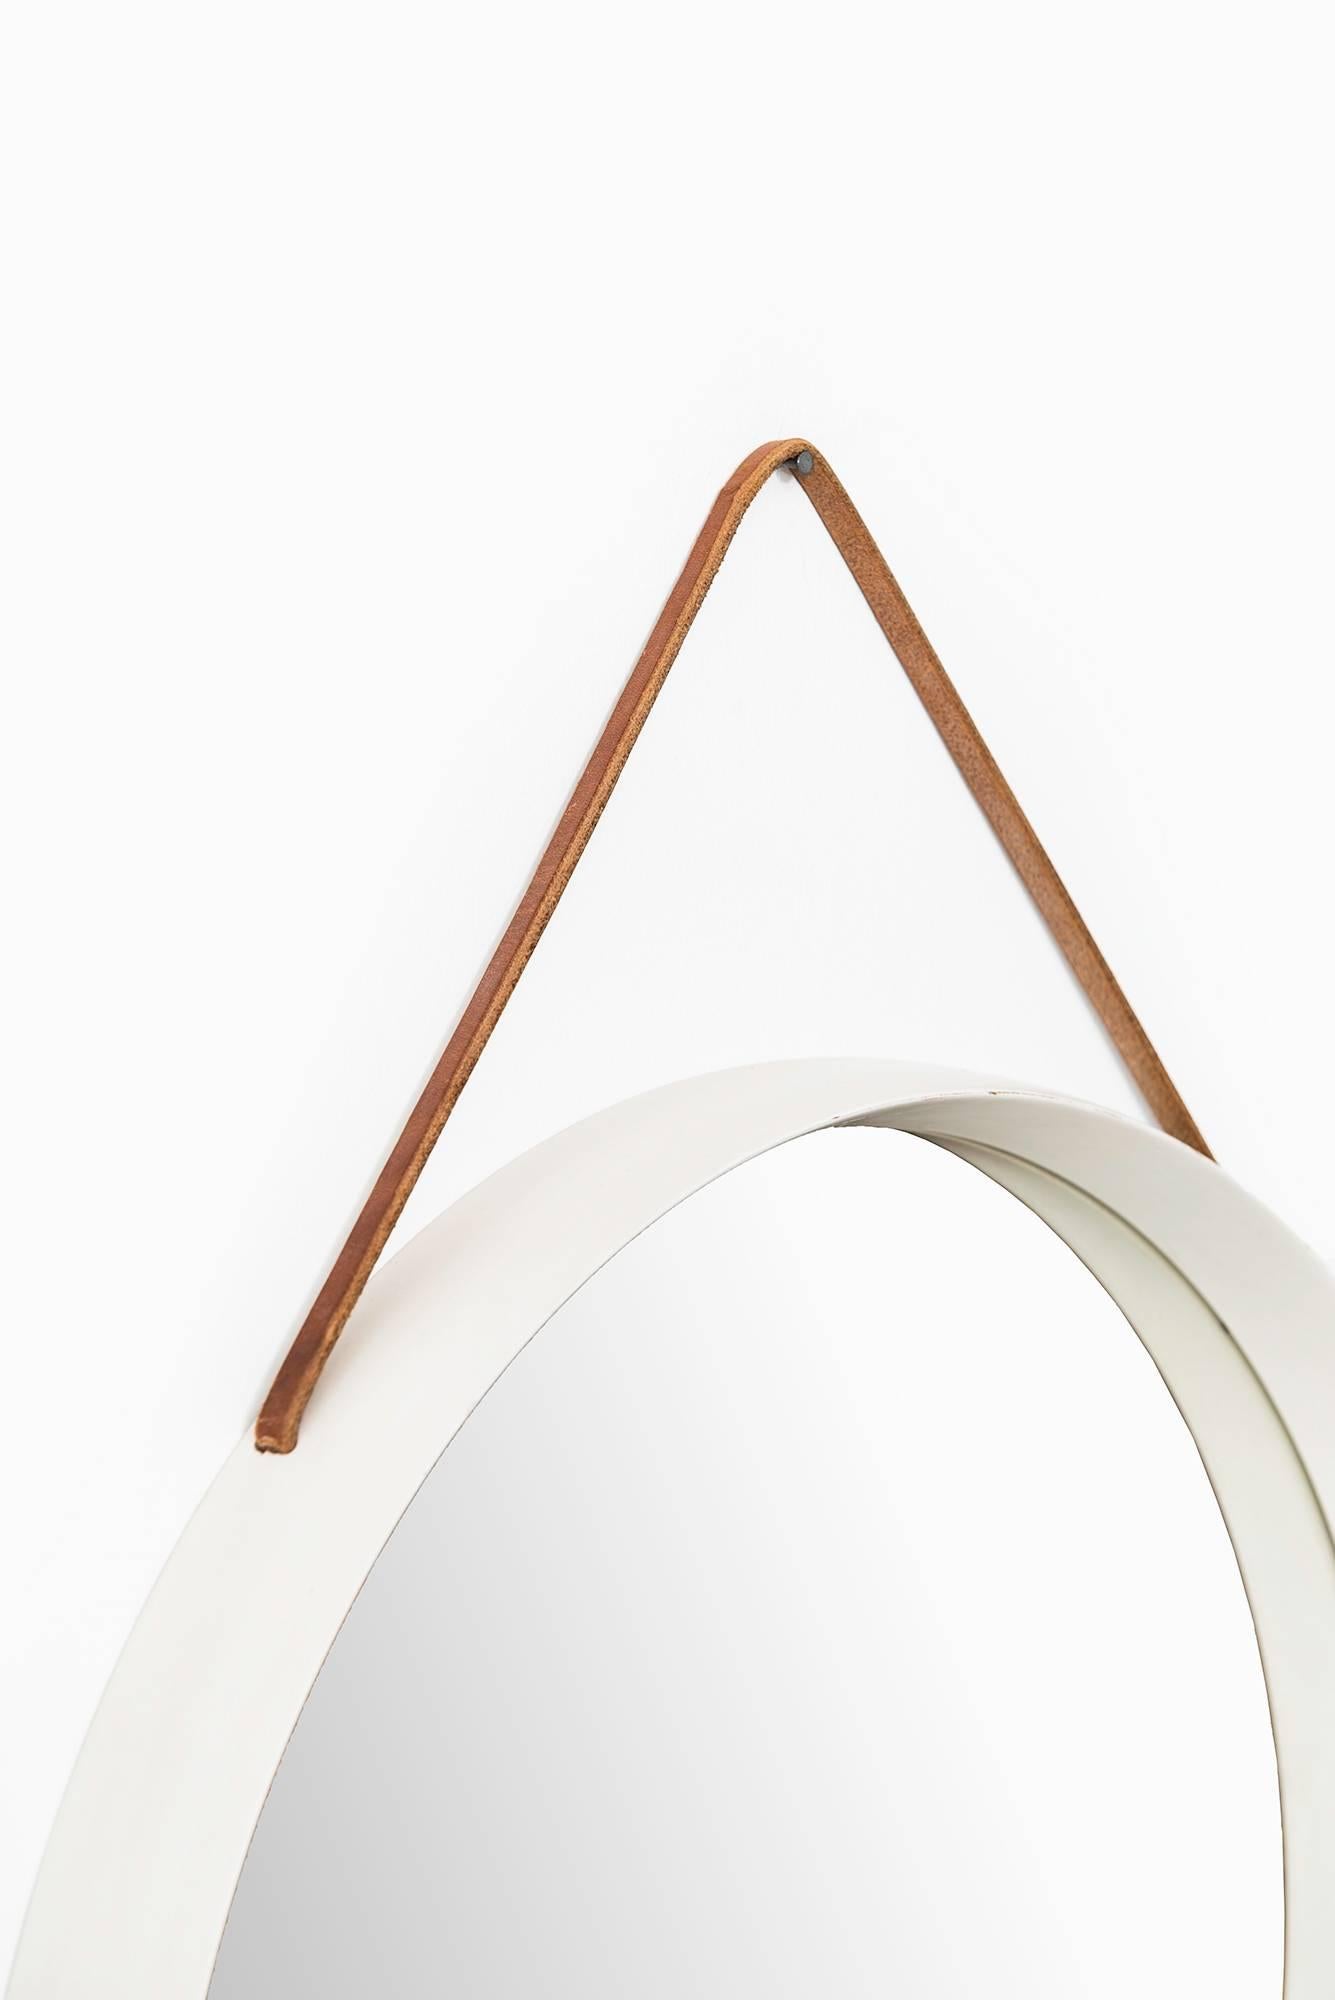 Weiß lackierter runder Spiegel mit Lederband, hergestellt in Schweden.